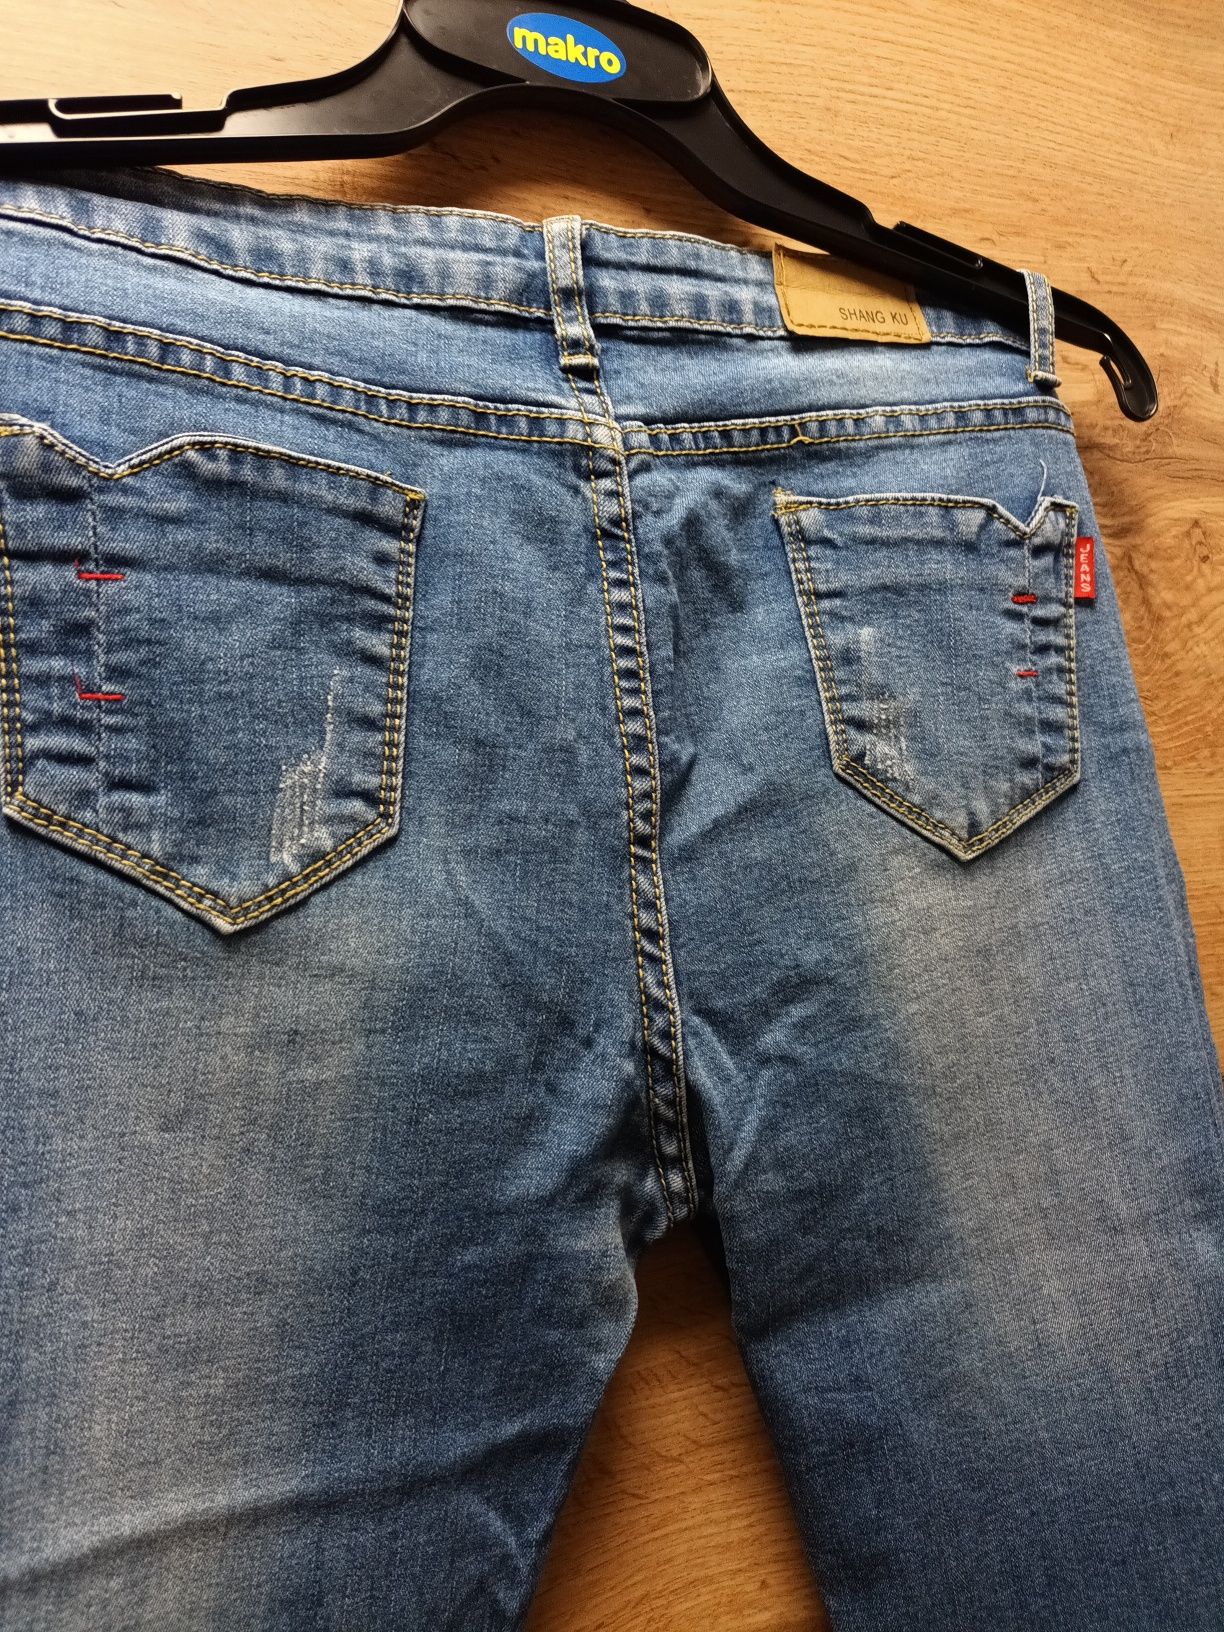 Spodnie jeans S/M